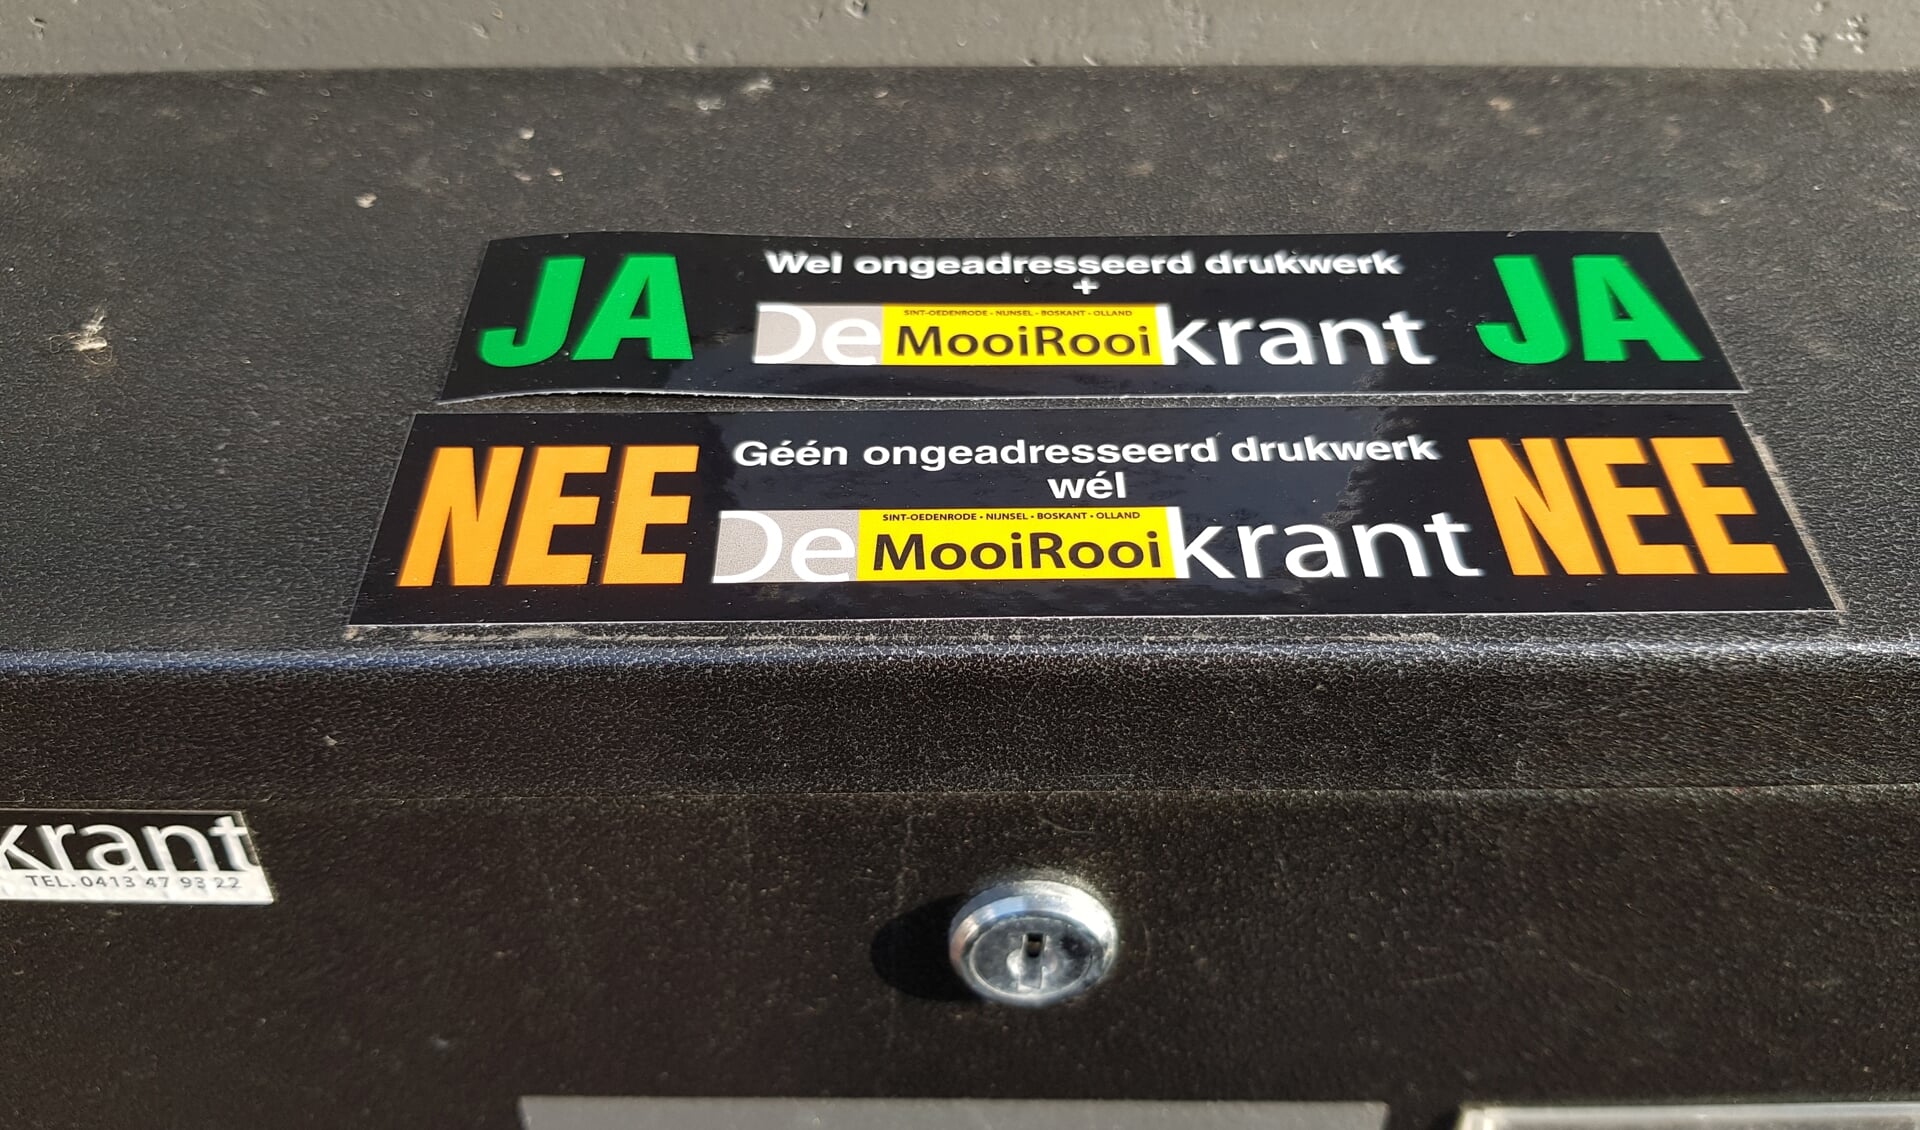 De voorbeelden van de twee stickers die MooiRooi heeft laten maken.